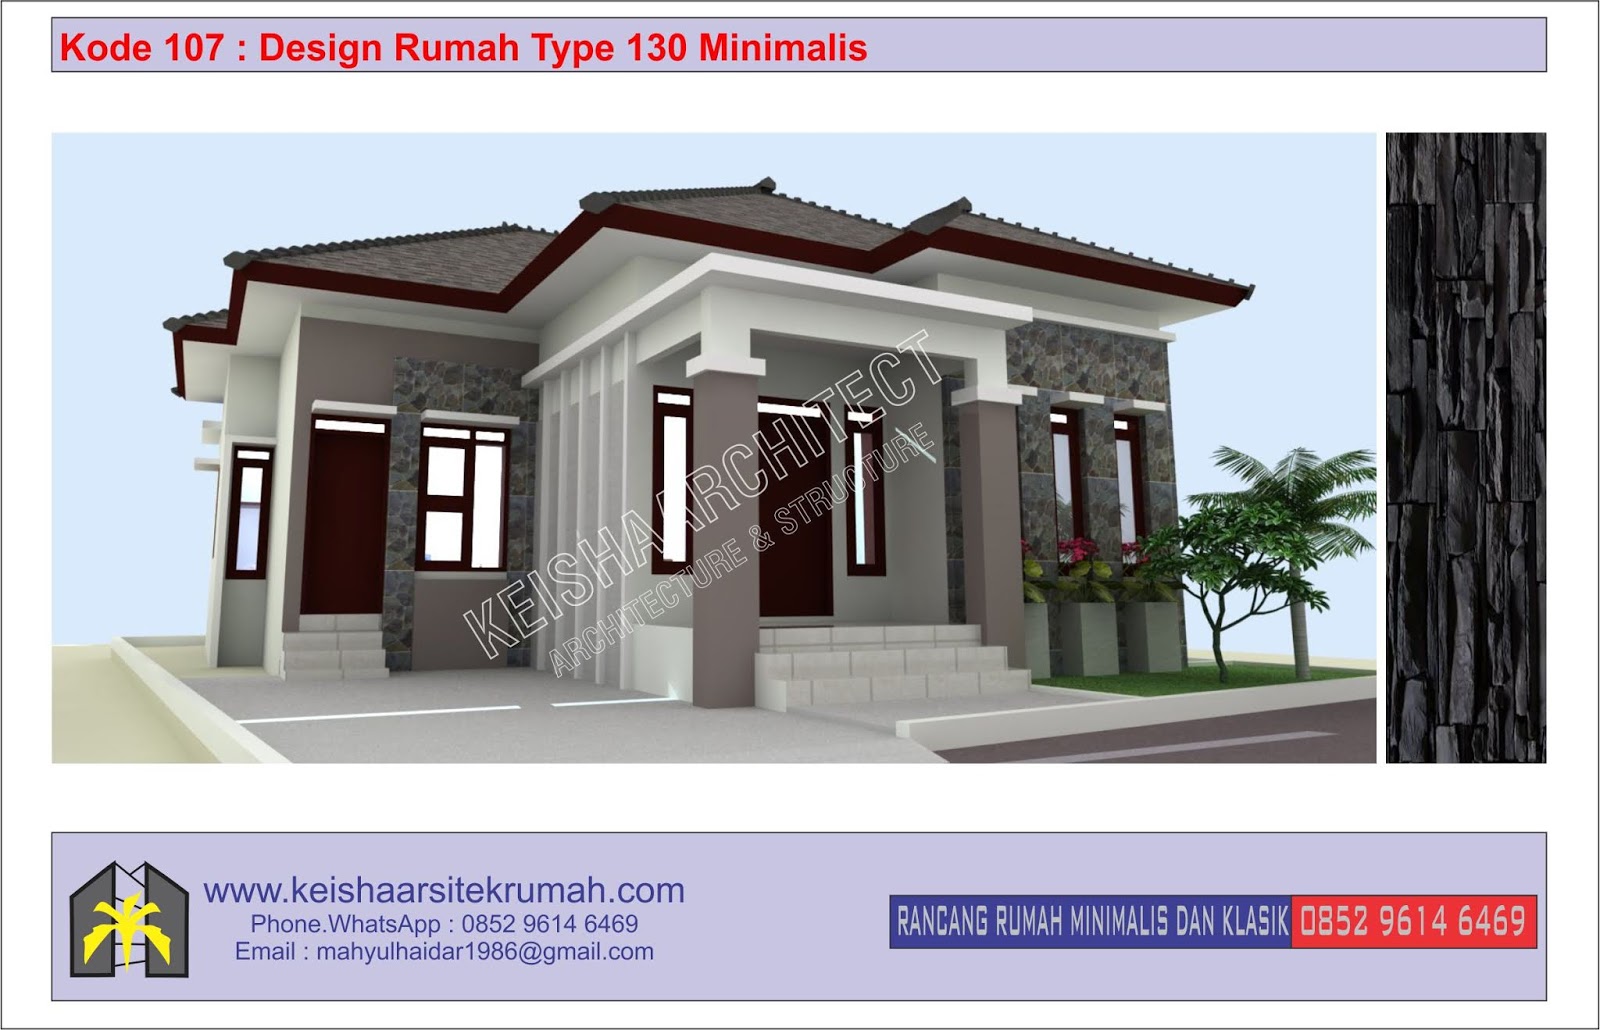 Kode 107 Design Rumah Type 130 Lokasi Ulee Kareng Banda Aceh